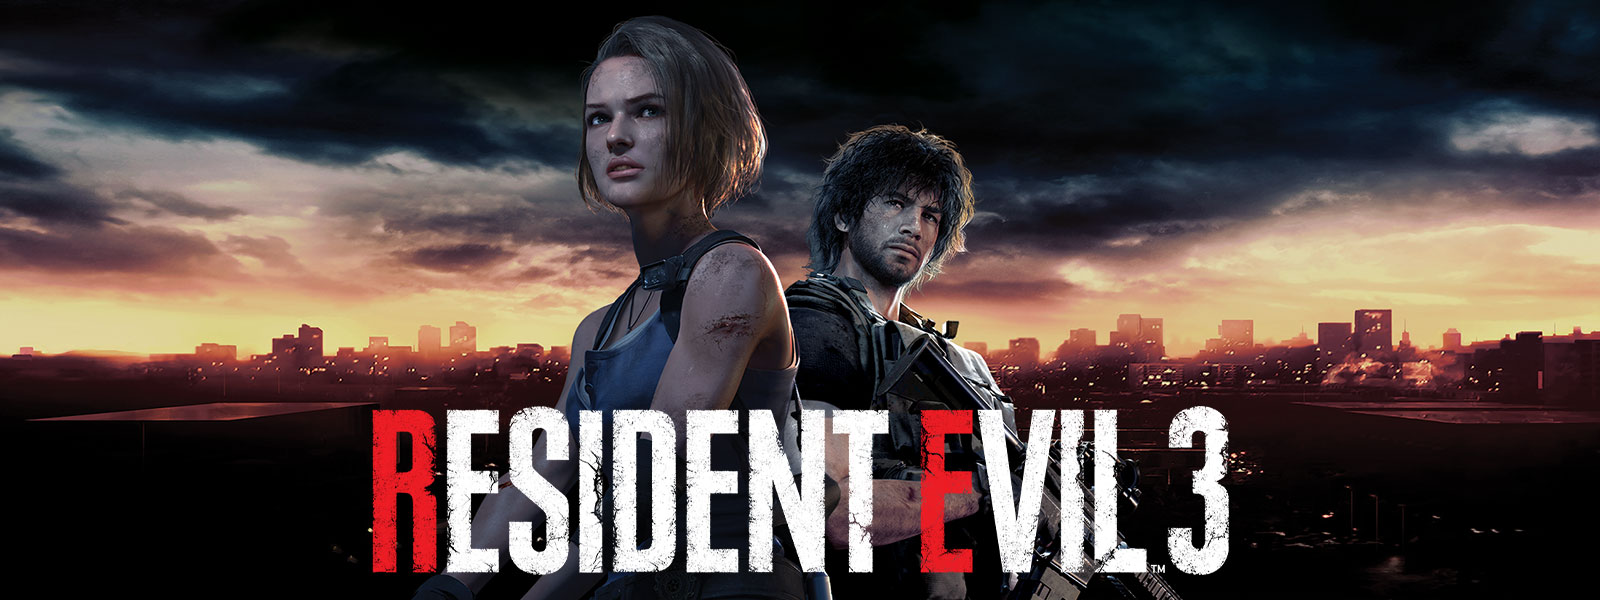 Resident Evil 3, Jill Valentine ja Carlos Oliveira seisovat Raccoon Cityn siluetin edessä